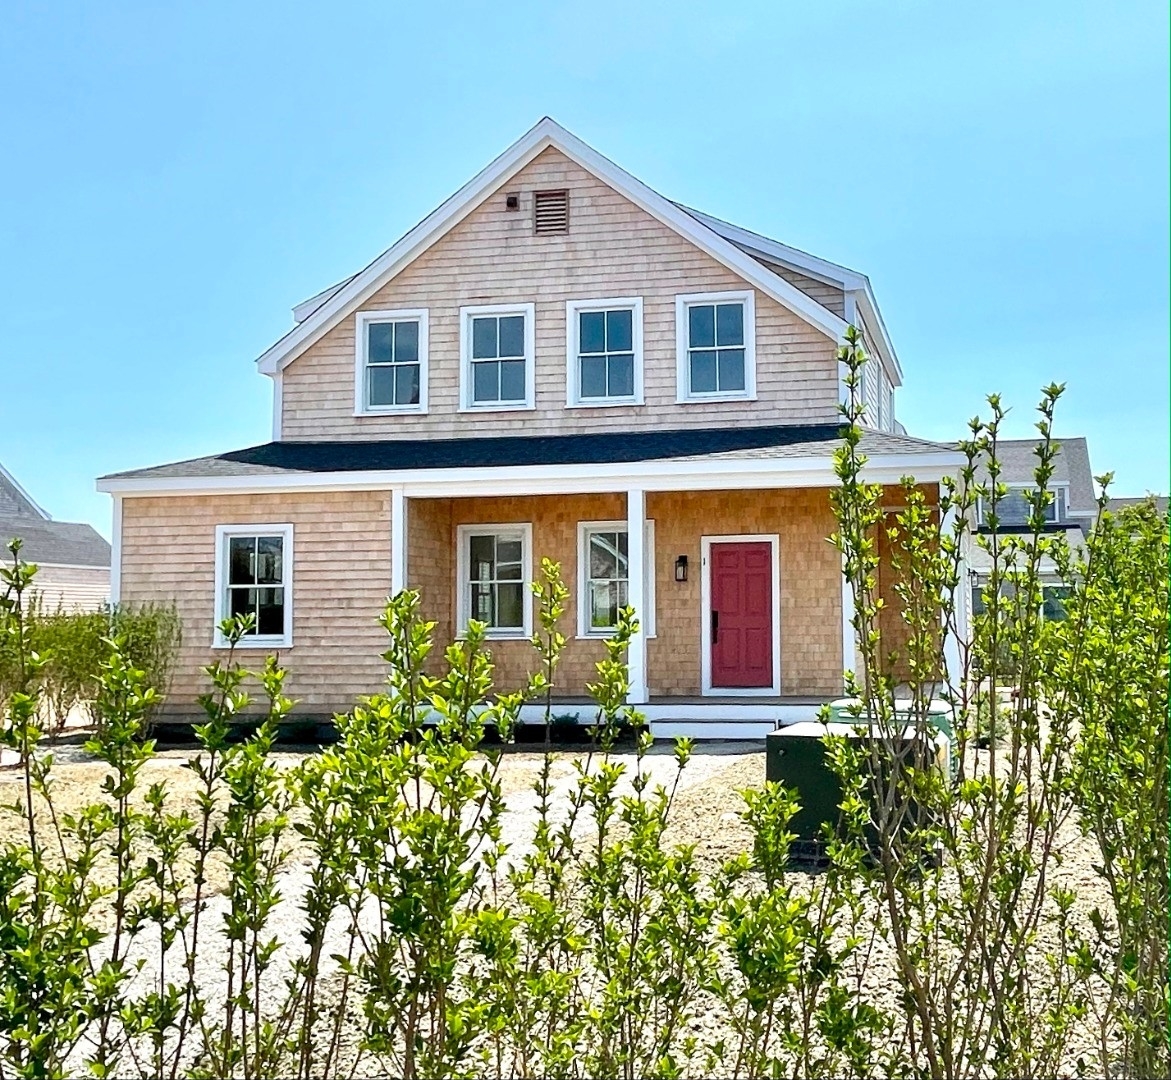 Property at Nantucket, MA 02554